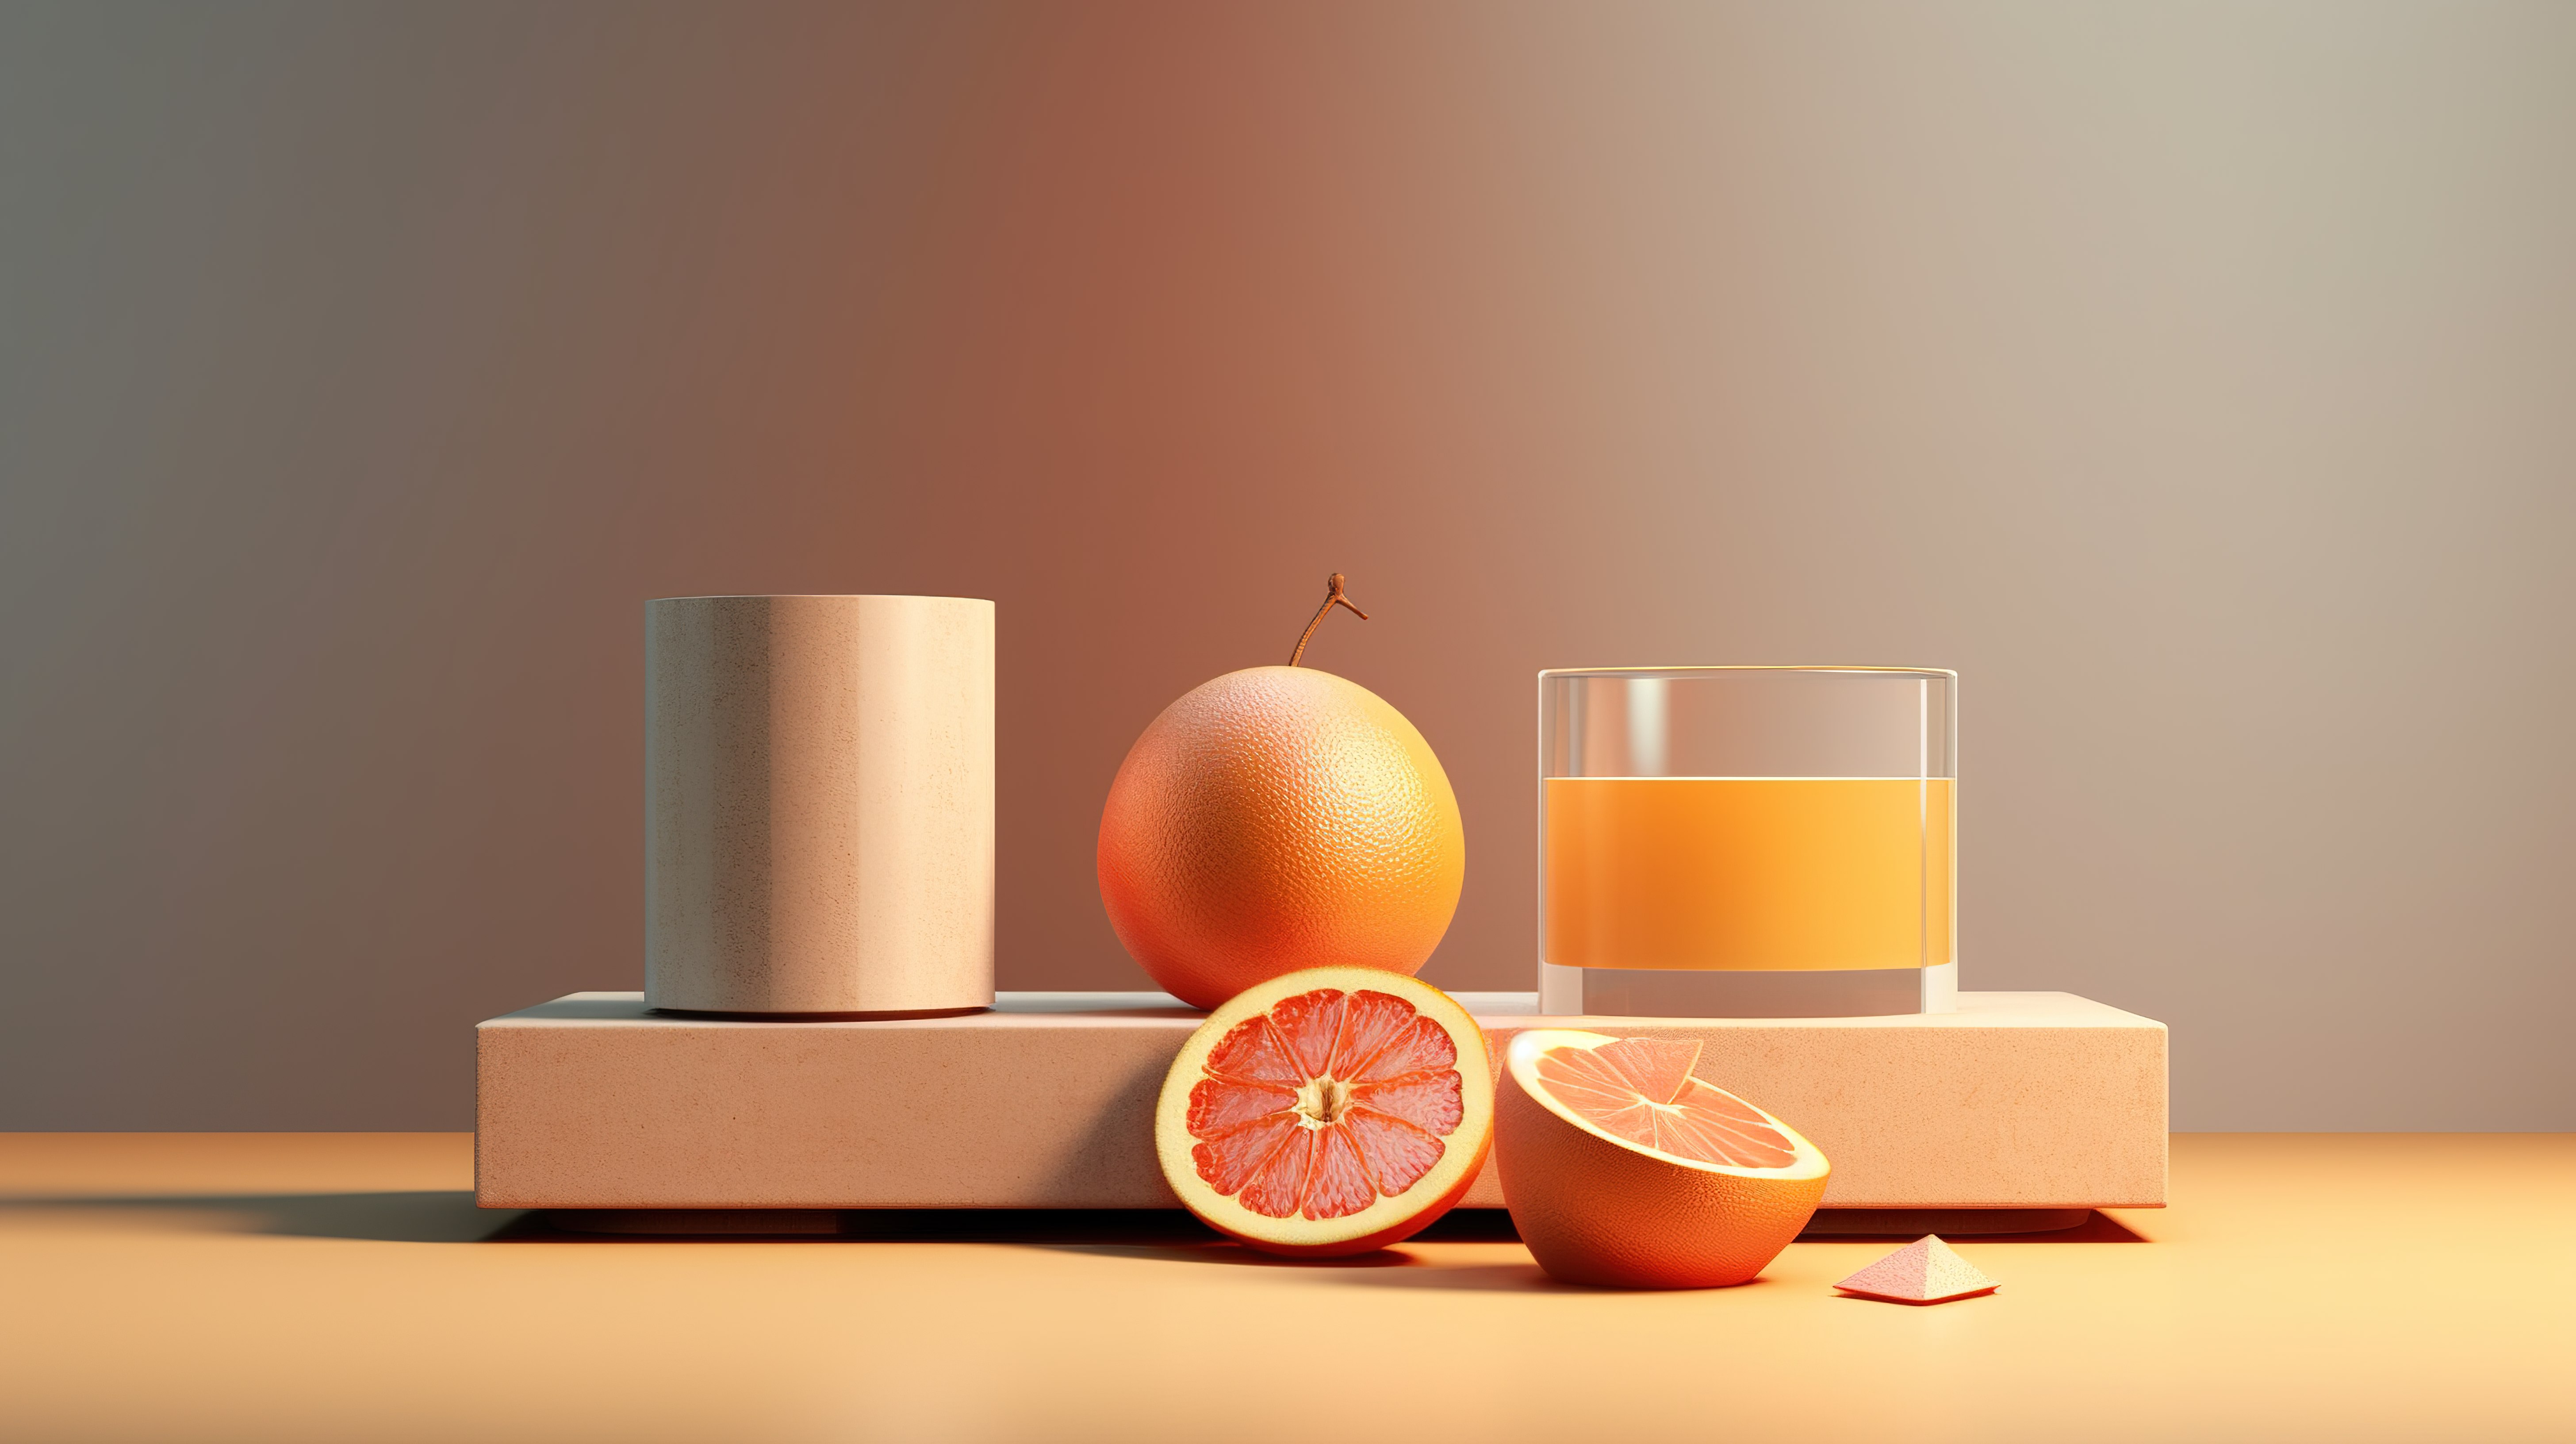 极简主义食物几何场景的详细 3D 渲染图片